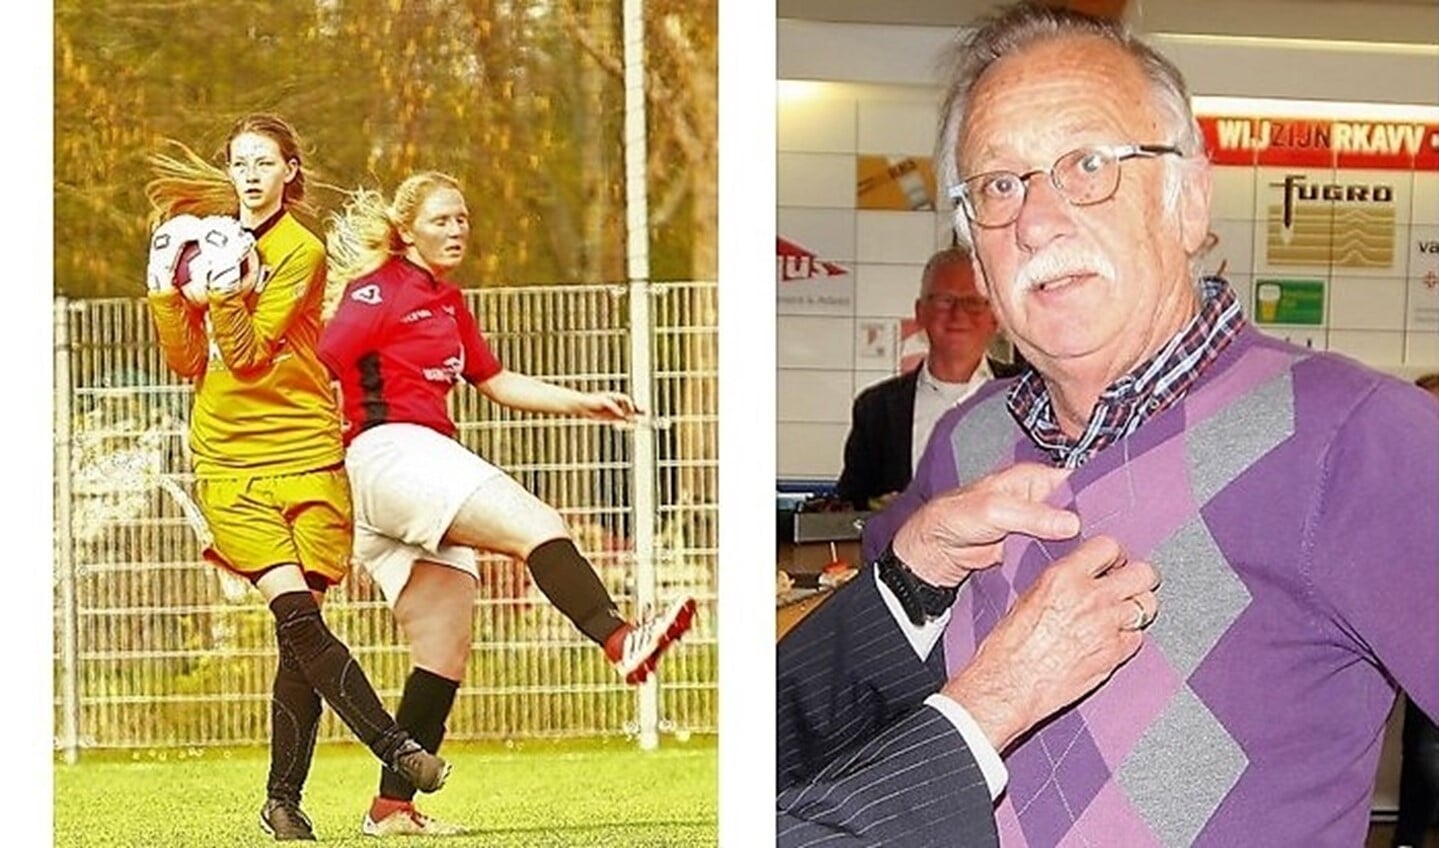 Dominique v.d. Meulen (RKAVV Vrouwen) debuteerde & Hans Slootmaker kreeg KNVB Gouden Speld (foto's: AW).